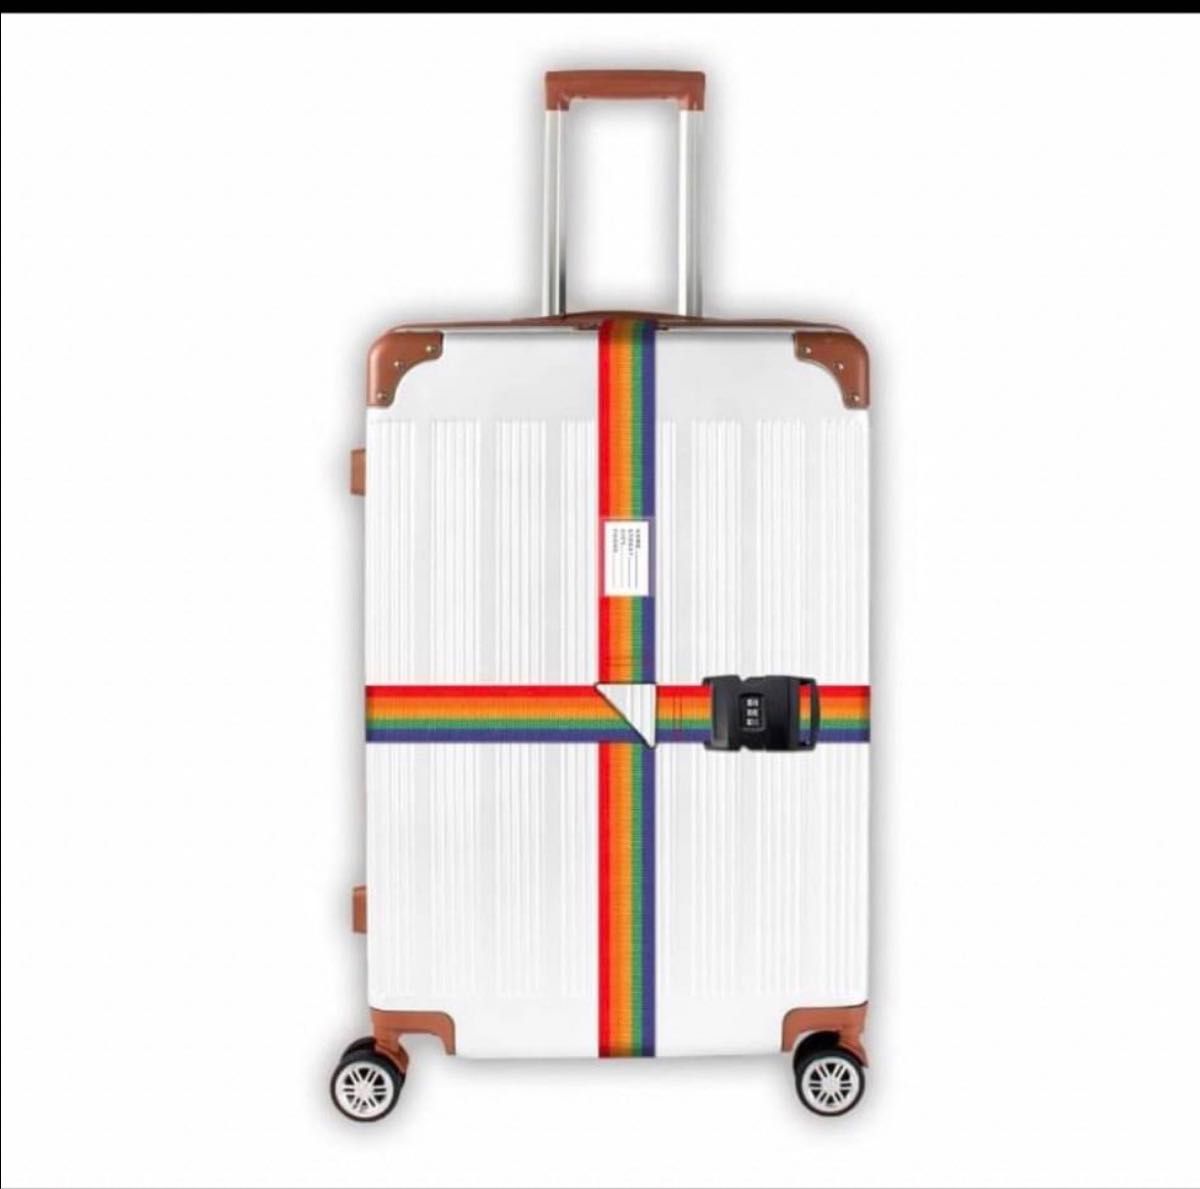 トランクベルト キャリーケースベルト 旅行 出張 盗難防止 荷崩れ防止 海外旅行 キャリーケース キャリーバッグ スーツケース